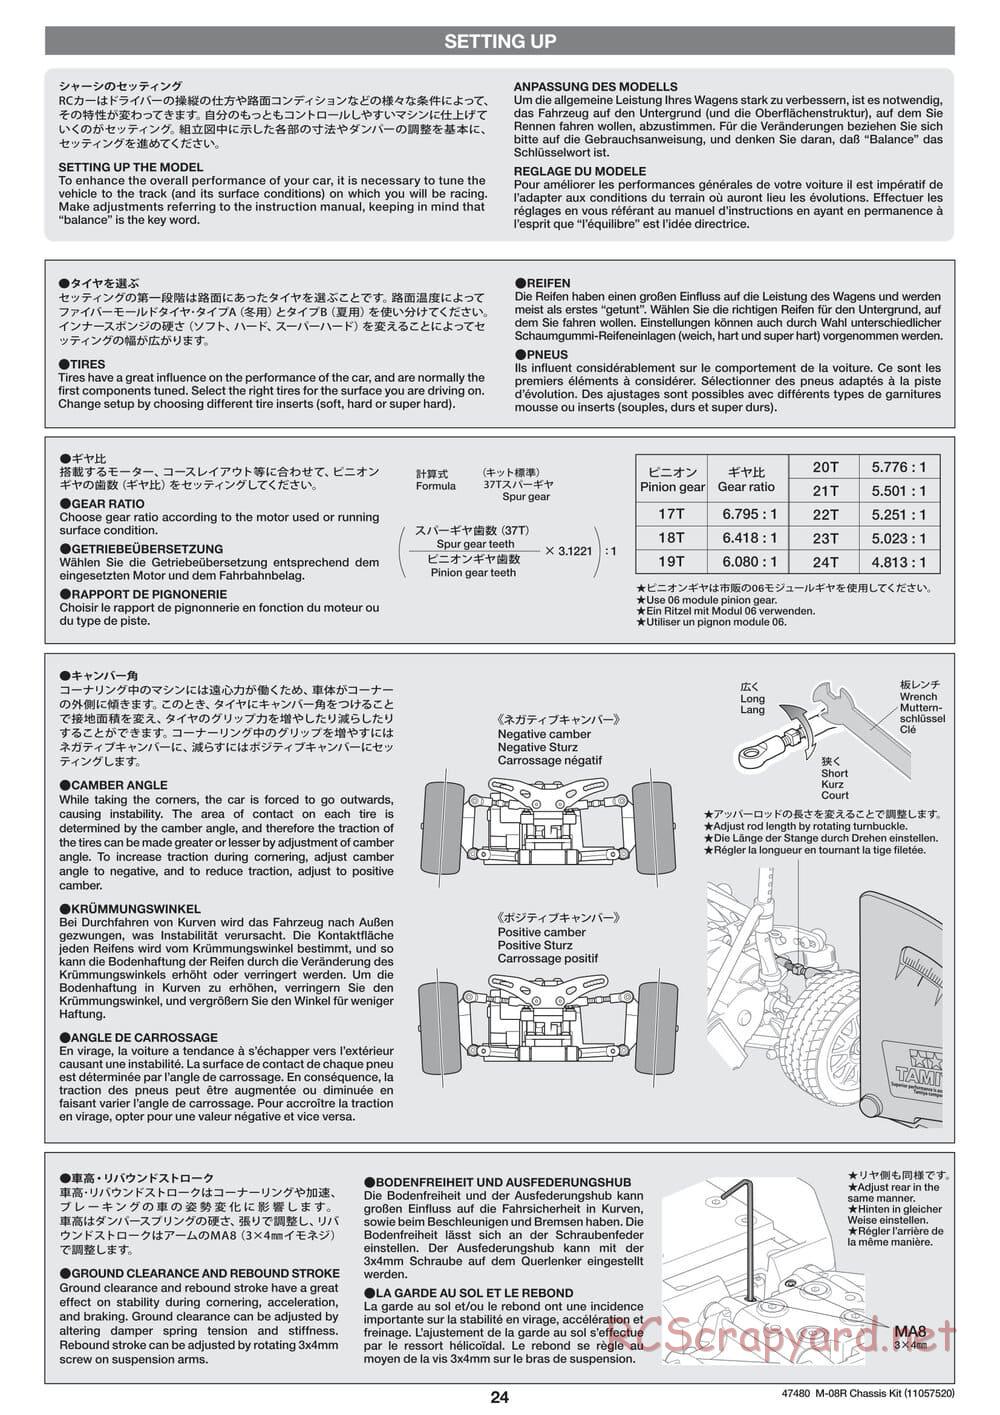 Tamiya - M-08R Chassis - Manual - Page 24